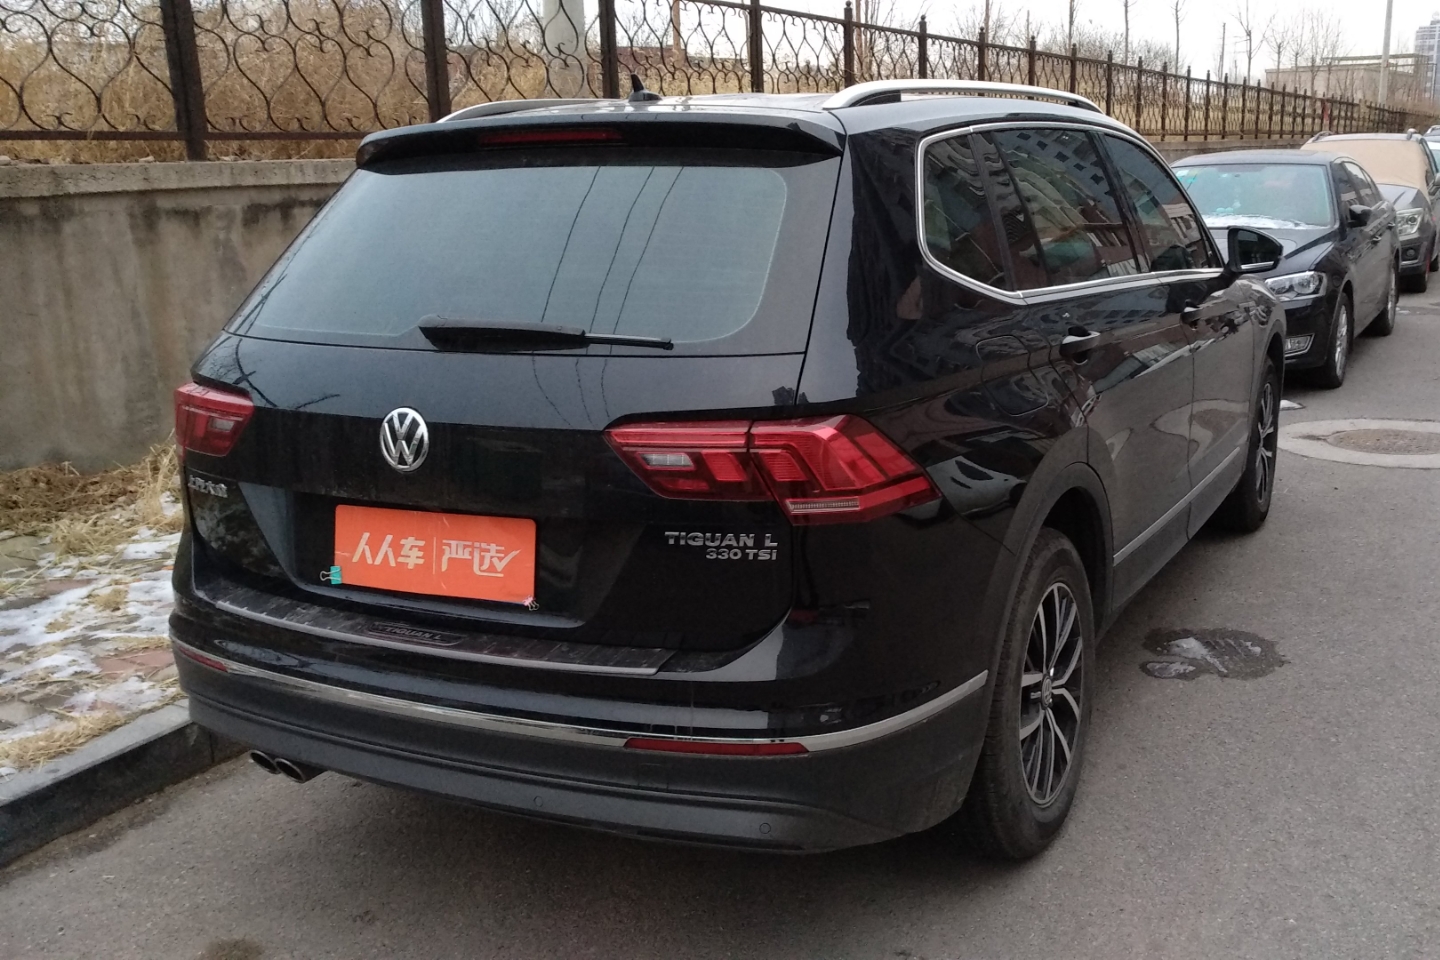 北京二手车出售  北京二手大众 北京二手途观l 大众-途观l 2018款 330